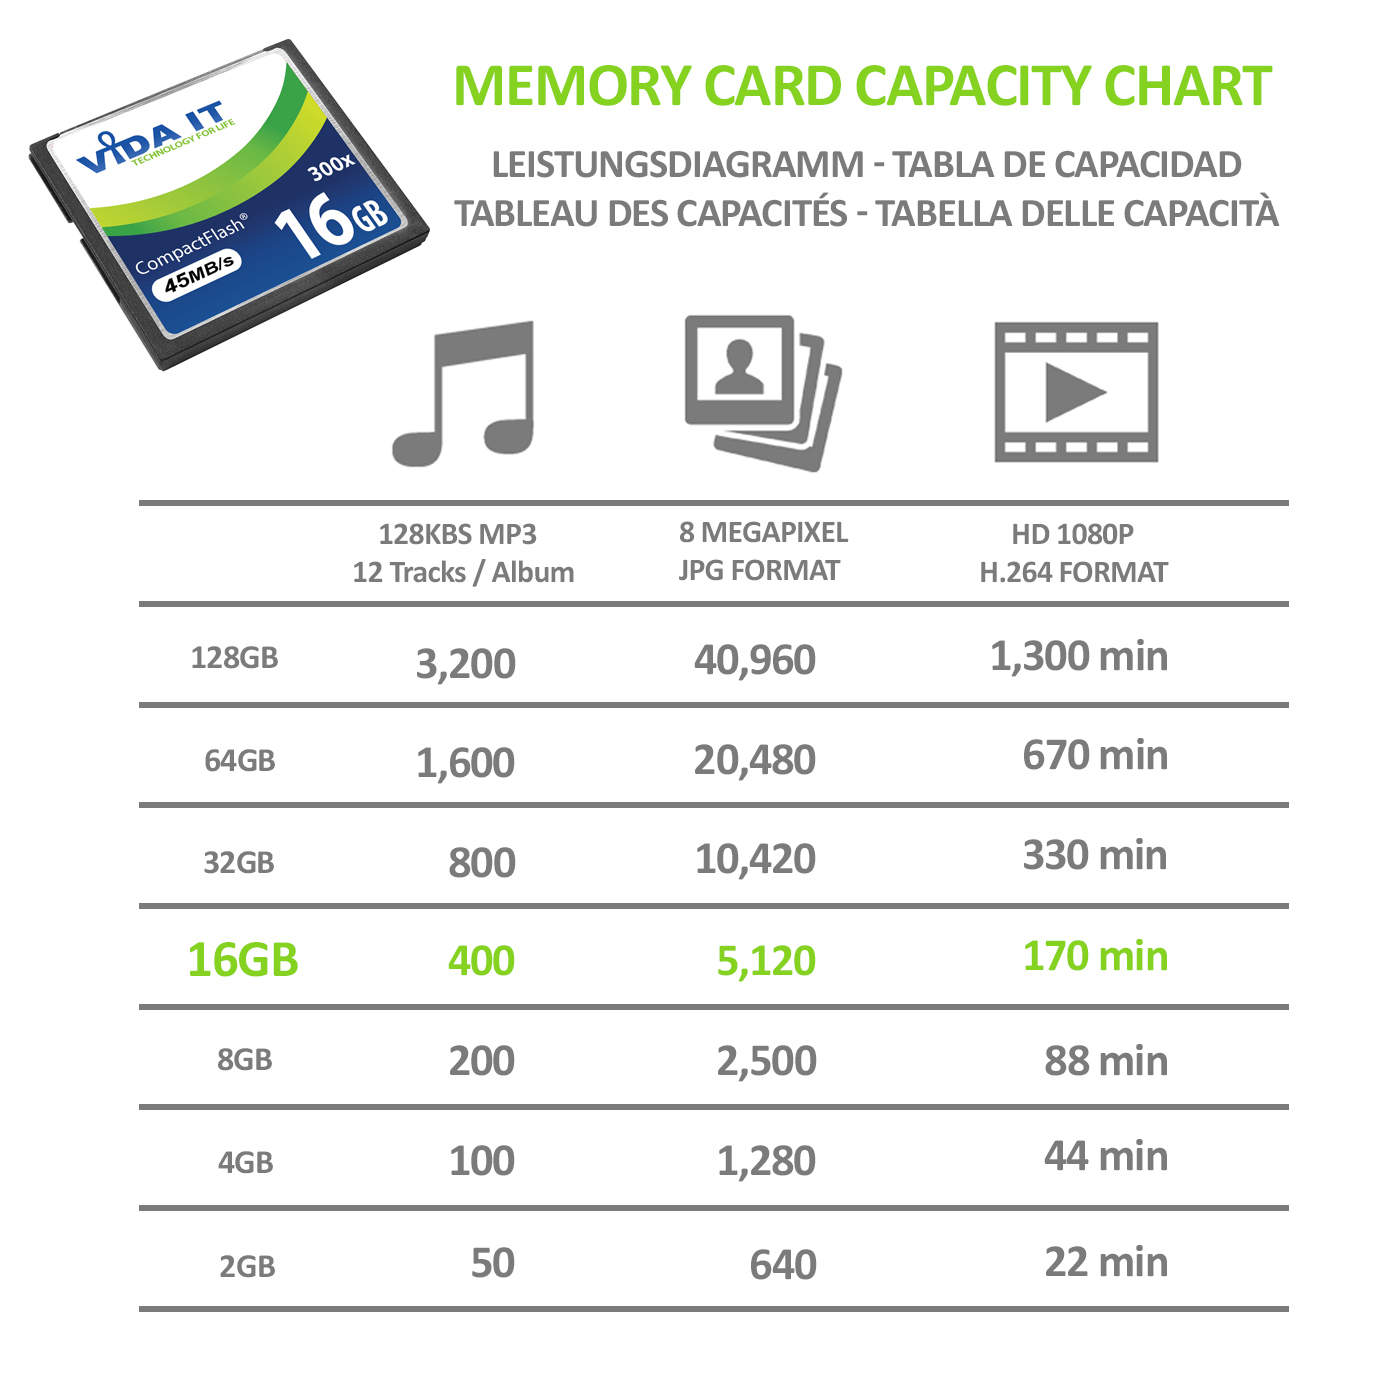 8GB-16GB CF Compact Flash Speicherkarte Extrem schnelles 200x 300x Für Kamera